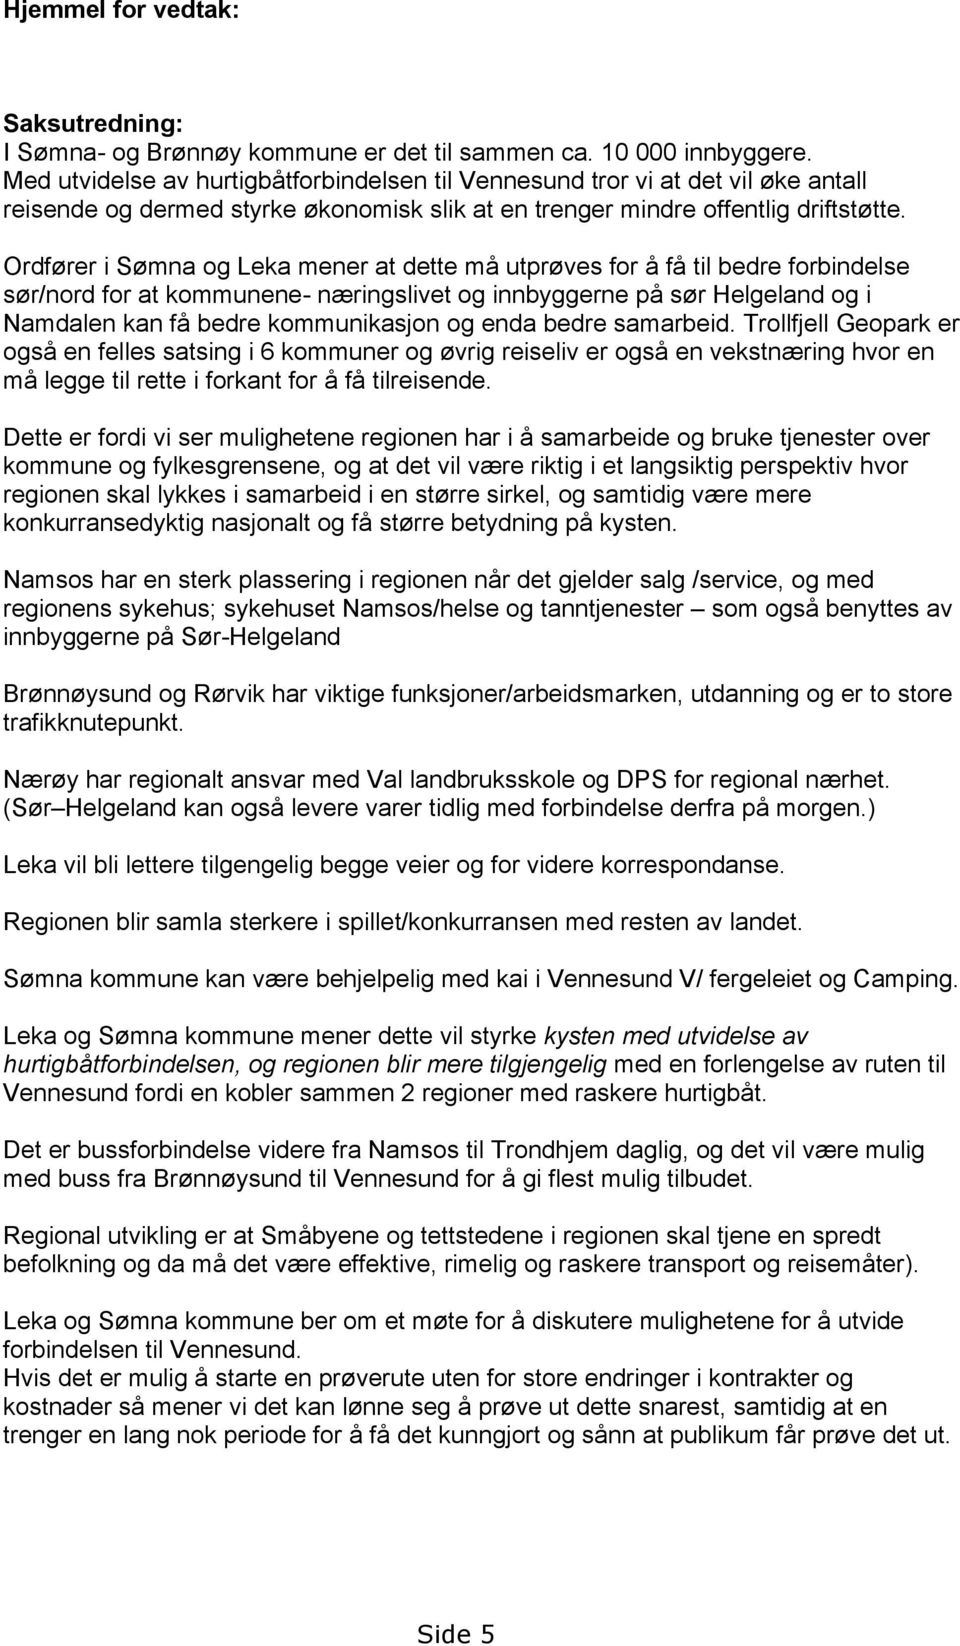 Ordfører i Sømna og Leka mener at dette må utprøves for å få til bedre forbindelse sør/nord for at kommunene- næringslivet og innbyggerne på sør Helgeland og i Namdalen kan få bedre kommunikasjon og